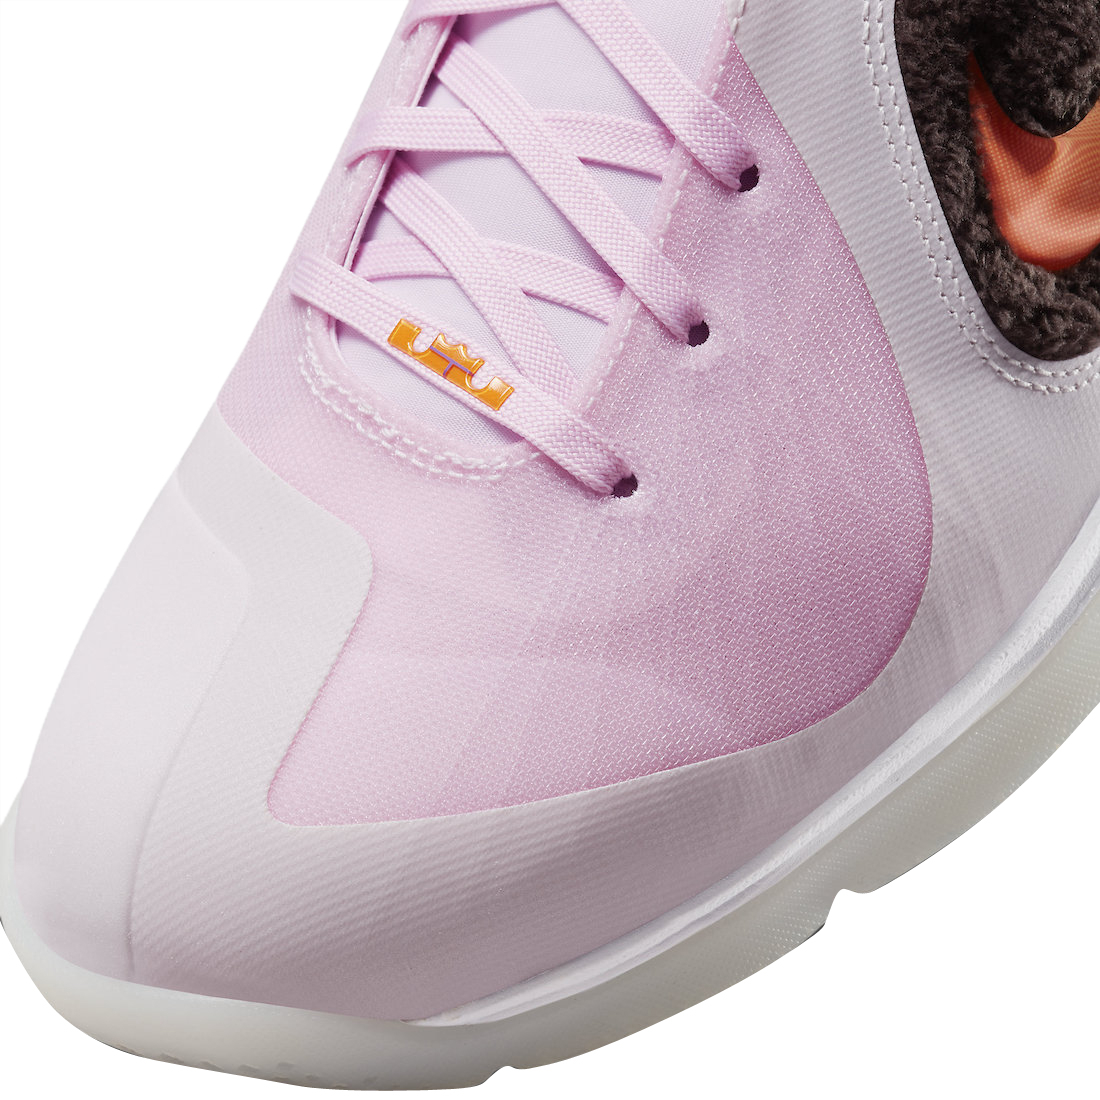 Nike LeBron 9 Regal Pink - May 2022 - DJ3908-600